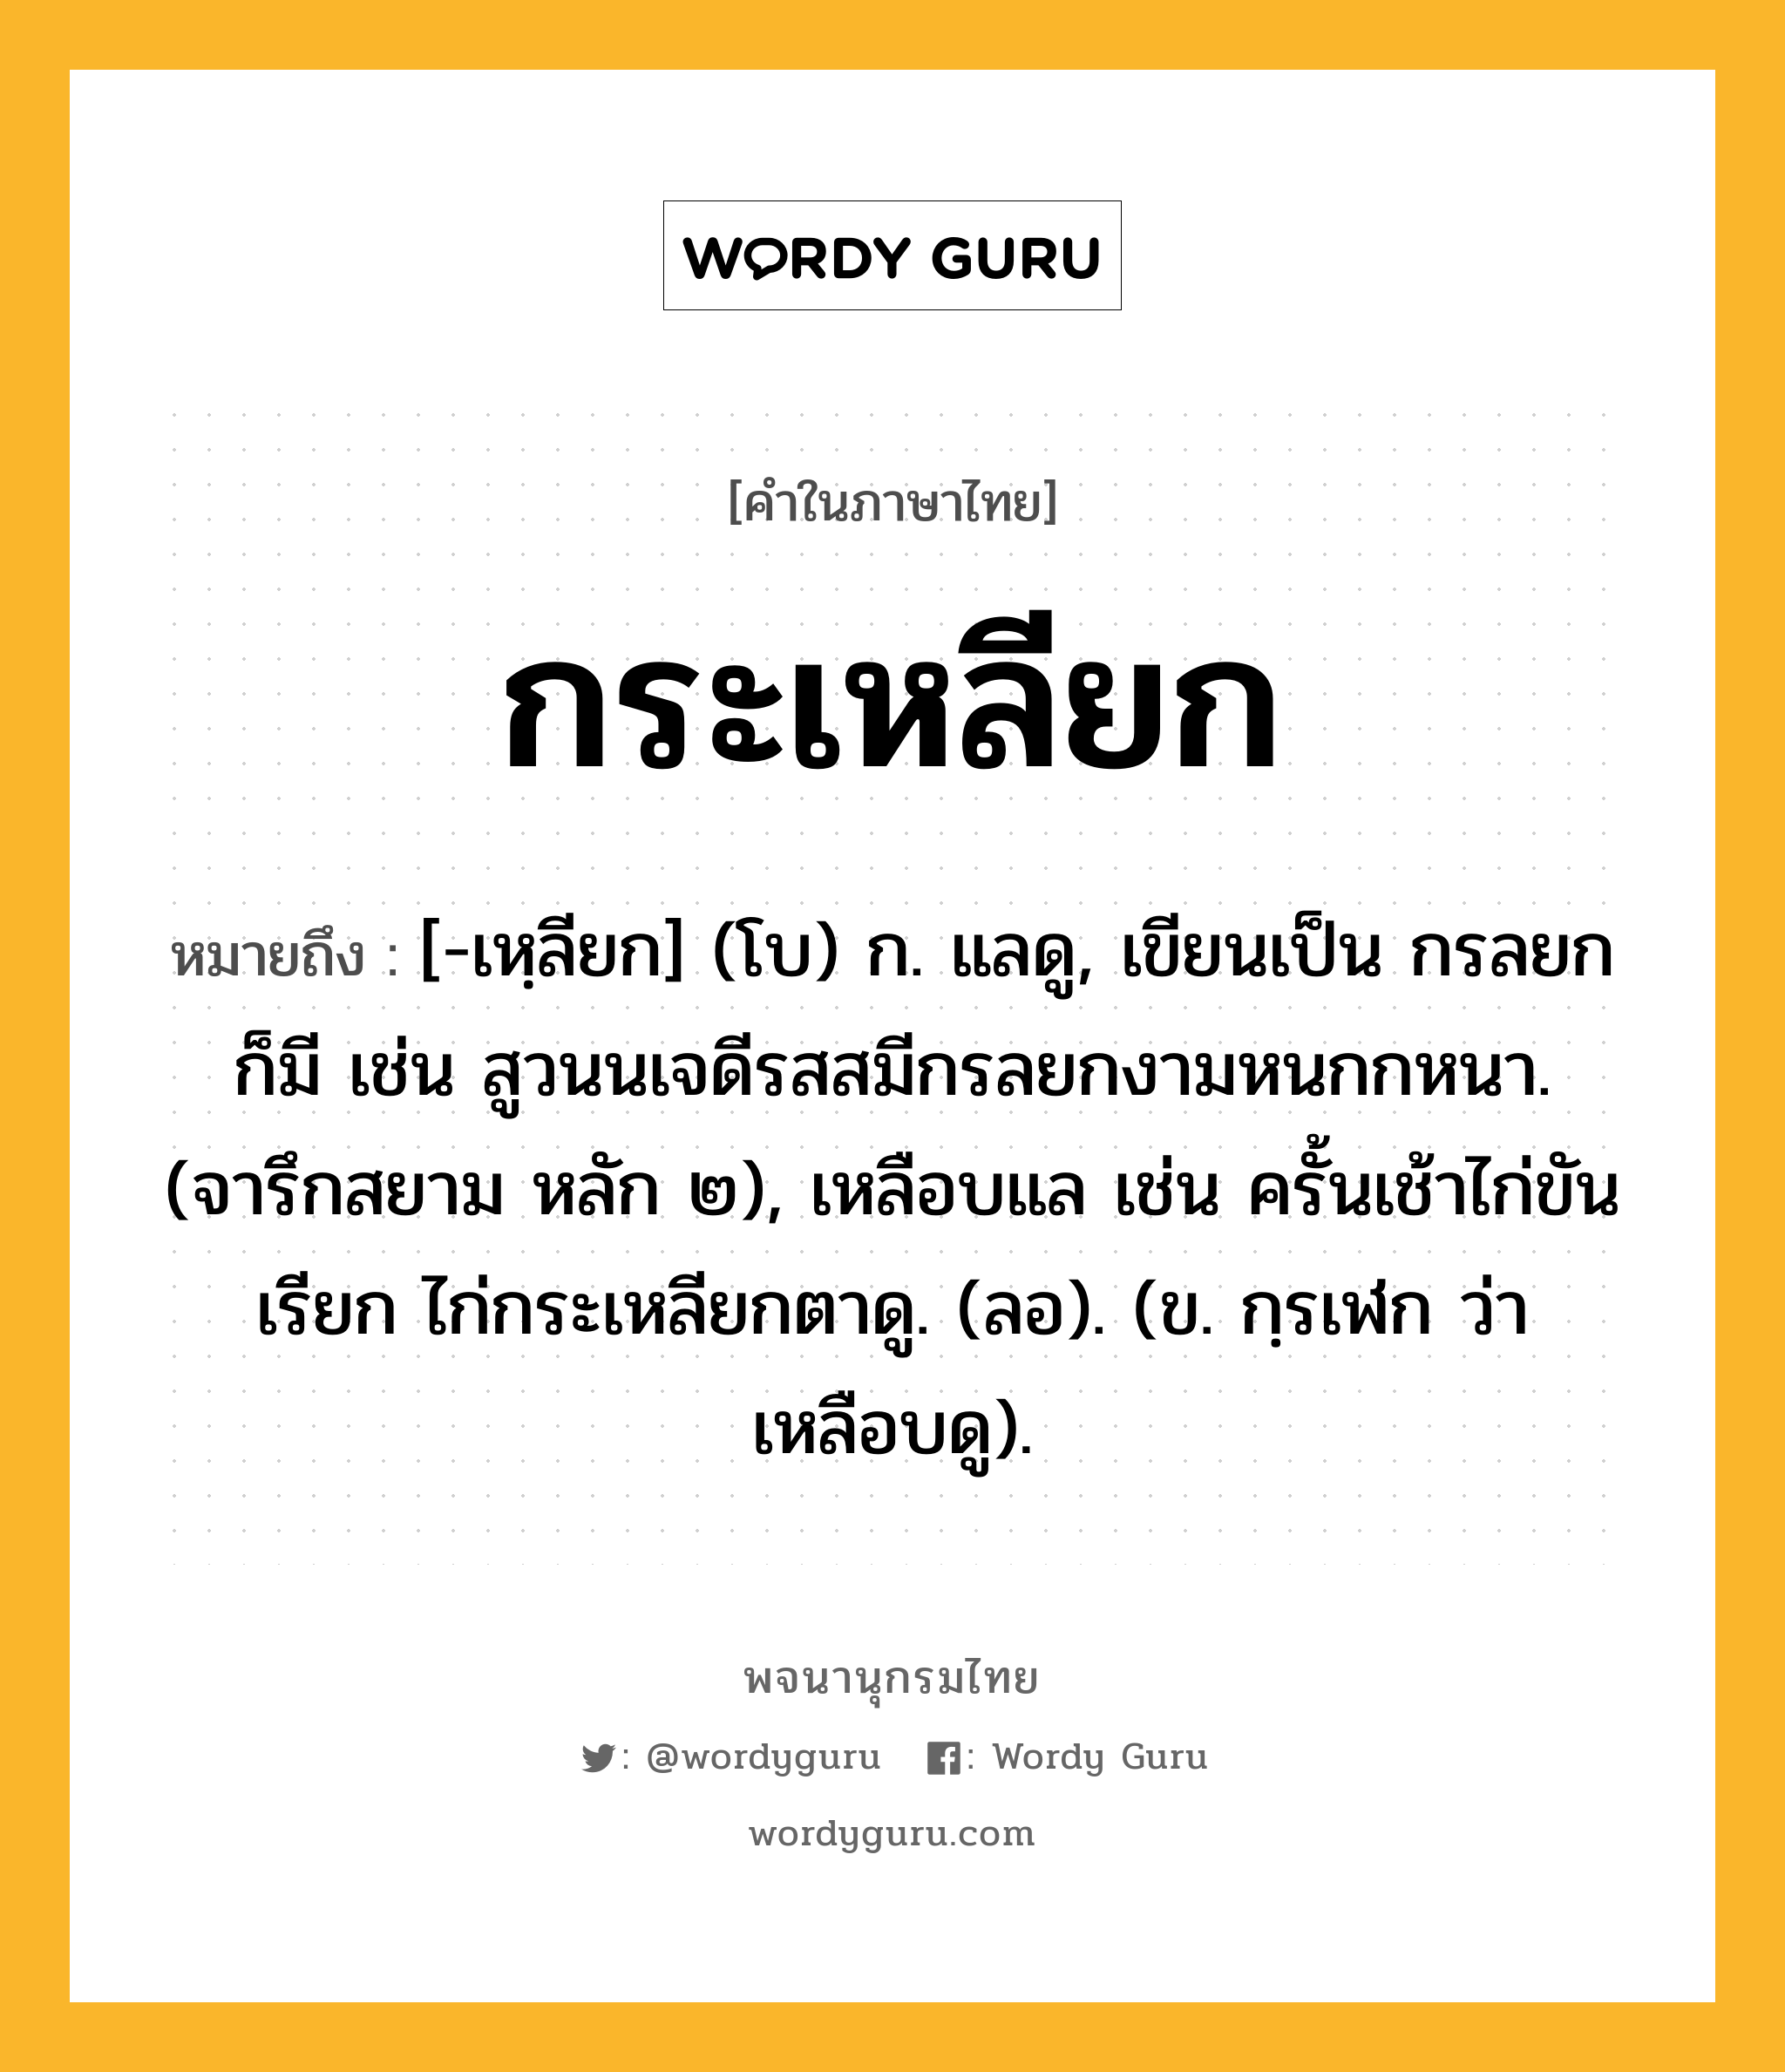 กระเหลียก ความหมาย หมายถึงอะไร?, คำในภาษาไทย กระเหลียก หมายถึง [-เหฺลียก] (โบ) ก. แลดู, เขียนเป็น กรลยก ก็มี เช่น สูวนนเจดีรสสมีกรลยกงามหนกกหนา. (จารึกสยาม หลัก ๒), เหลือบแล เช่น ครั้นเช้าไก่ขันเรียก ไก่กระเหลียกตาดู. (ลอ). (ข. กฺรเฬก ว่า เหลือบดู).